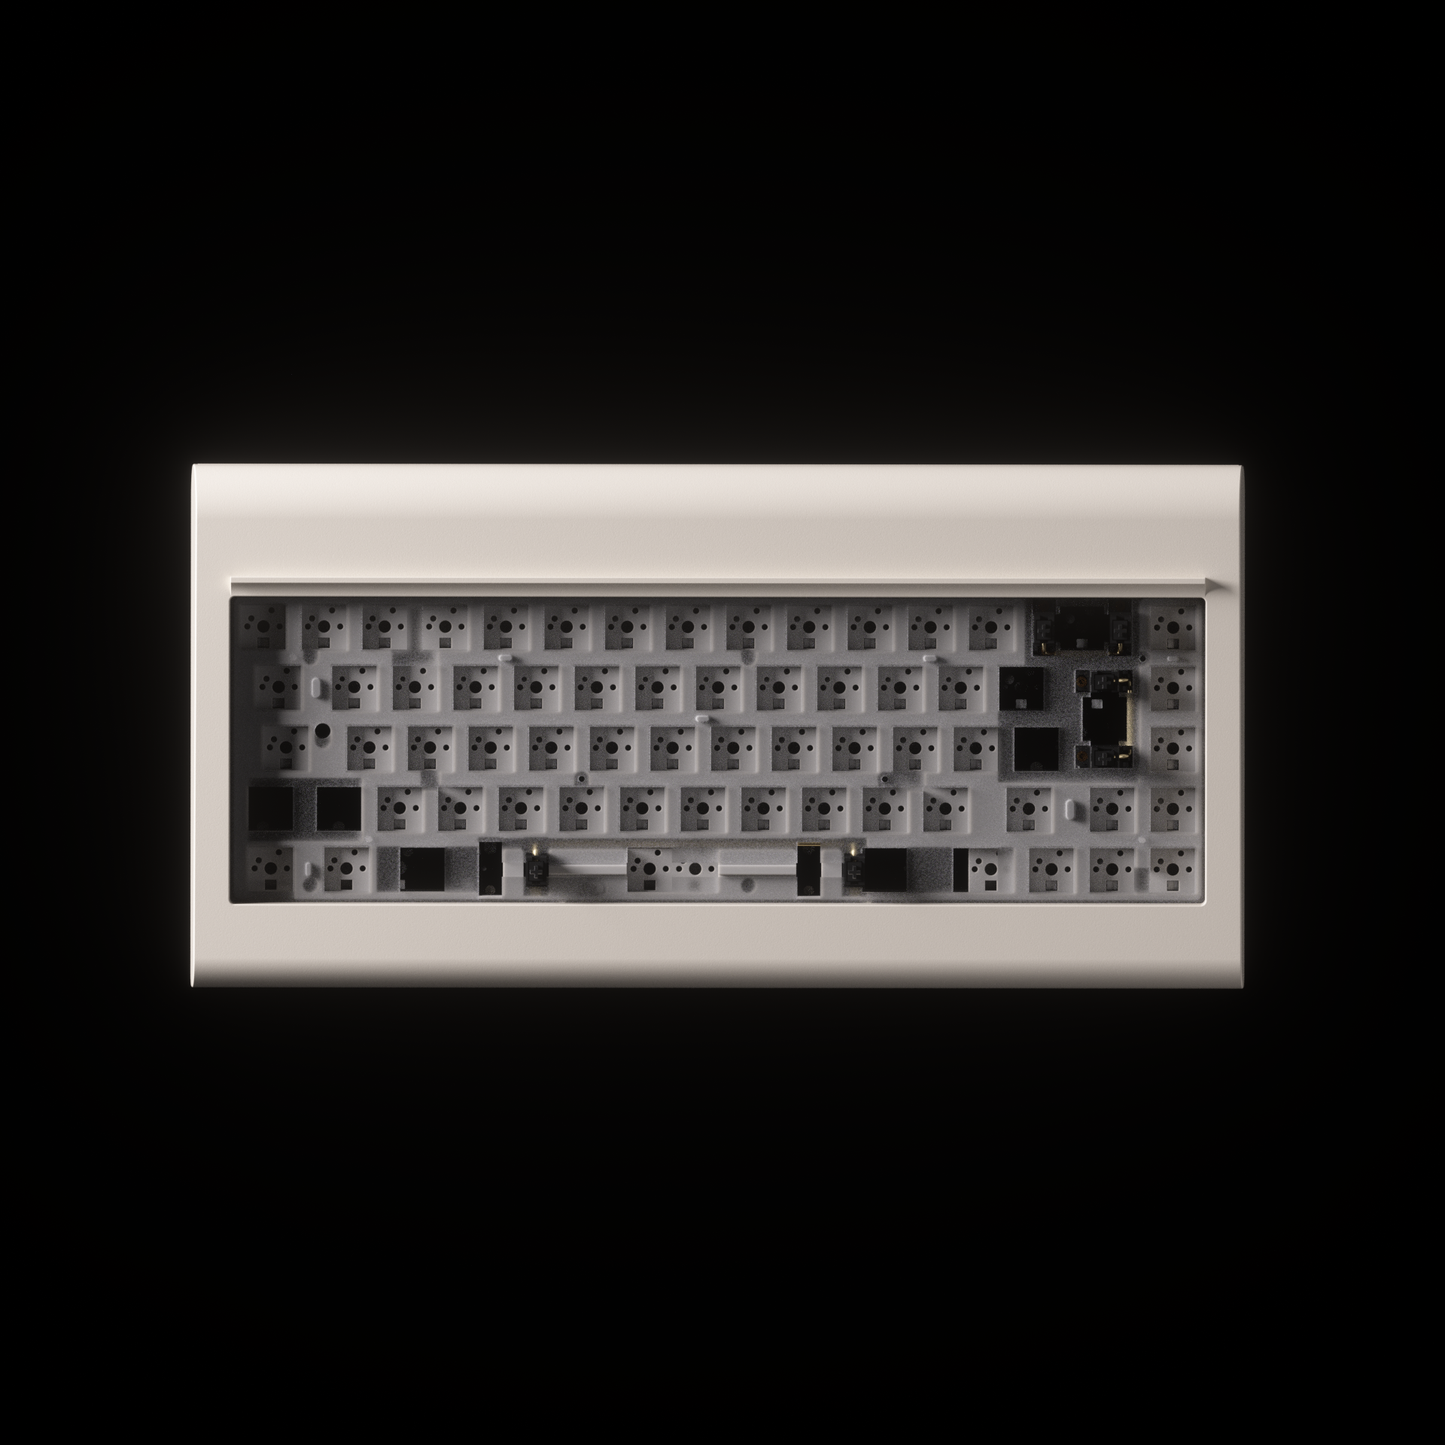 PC66 Barebone (68 鍵)